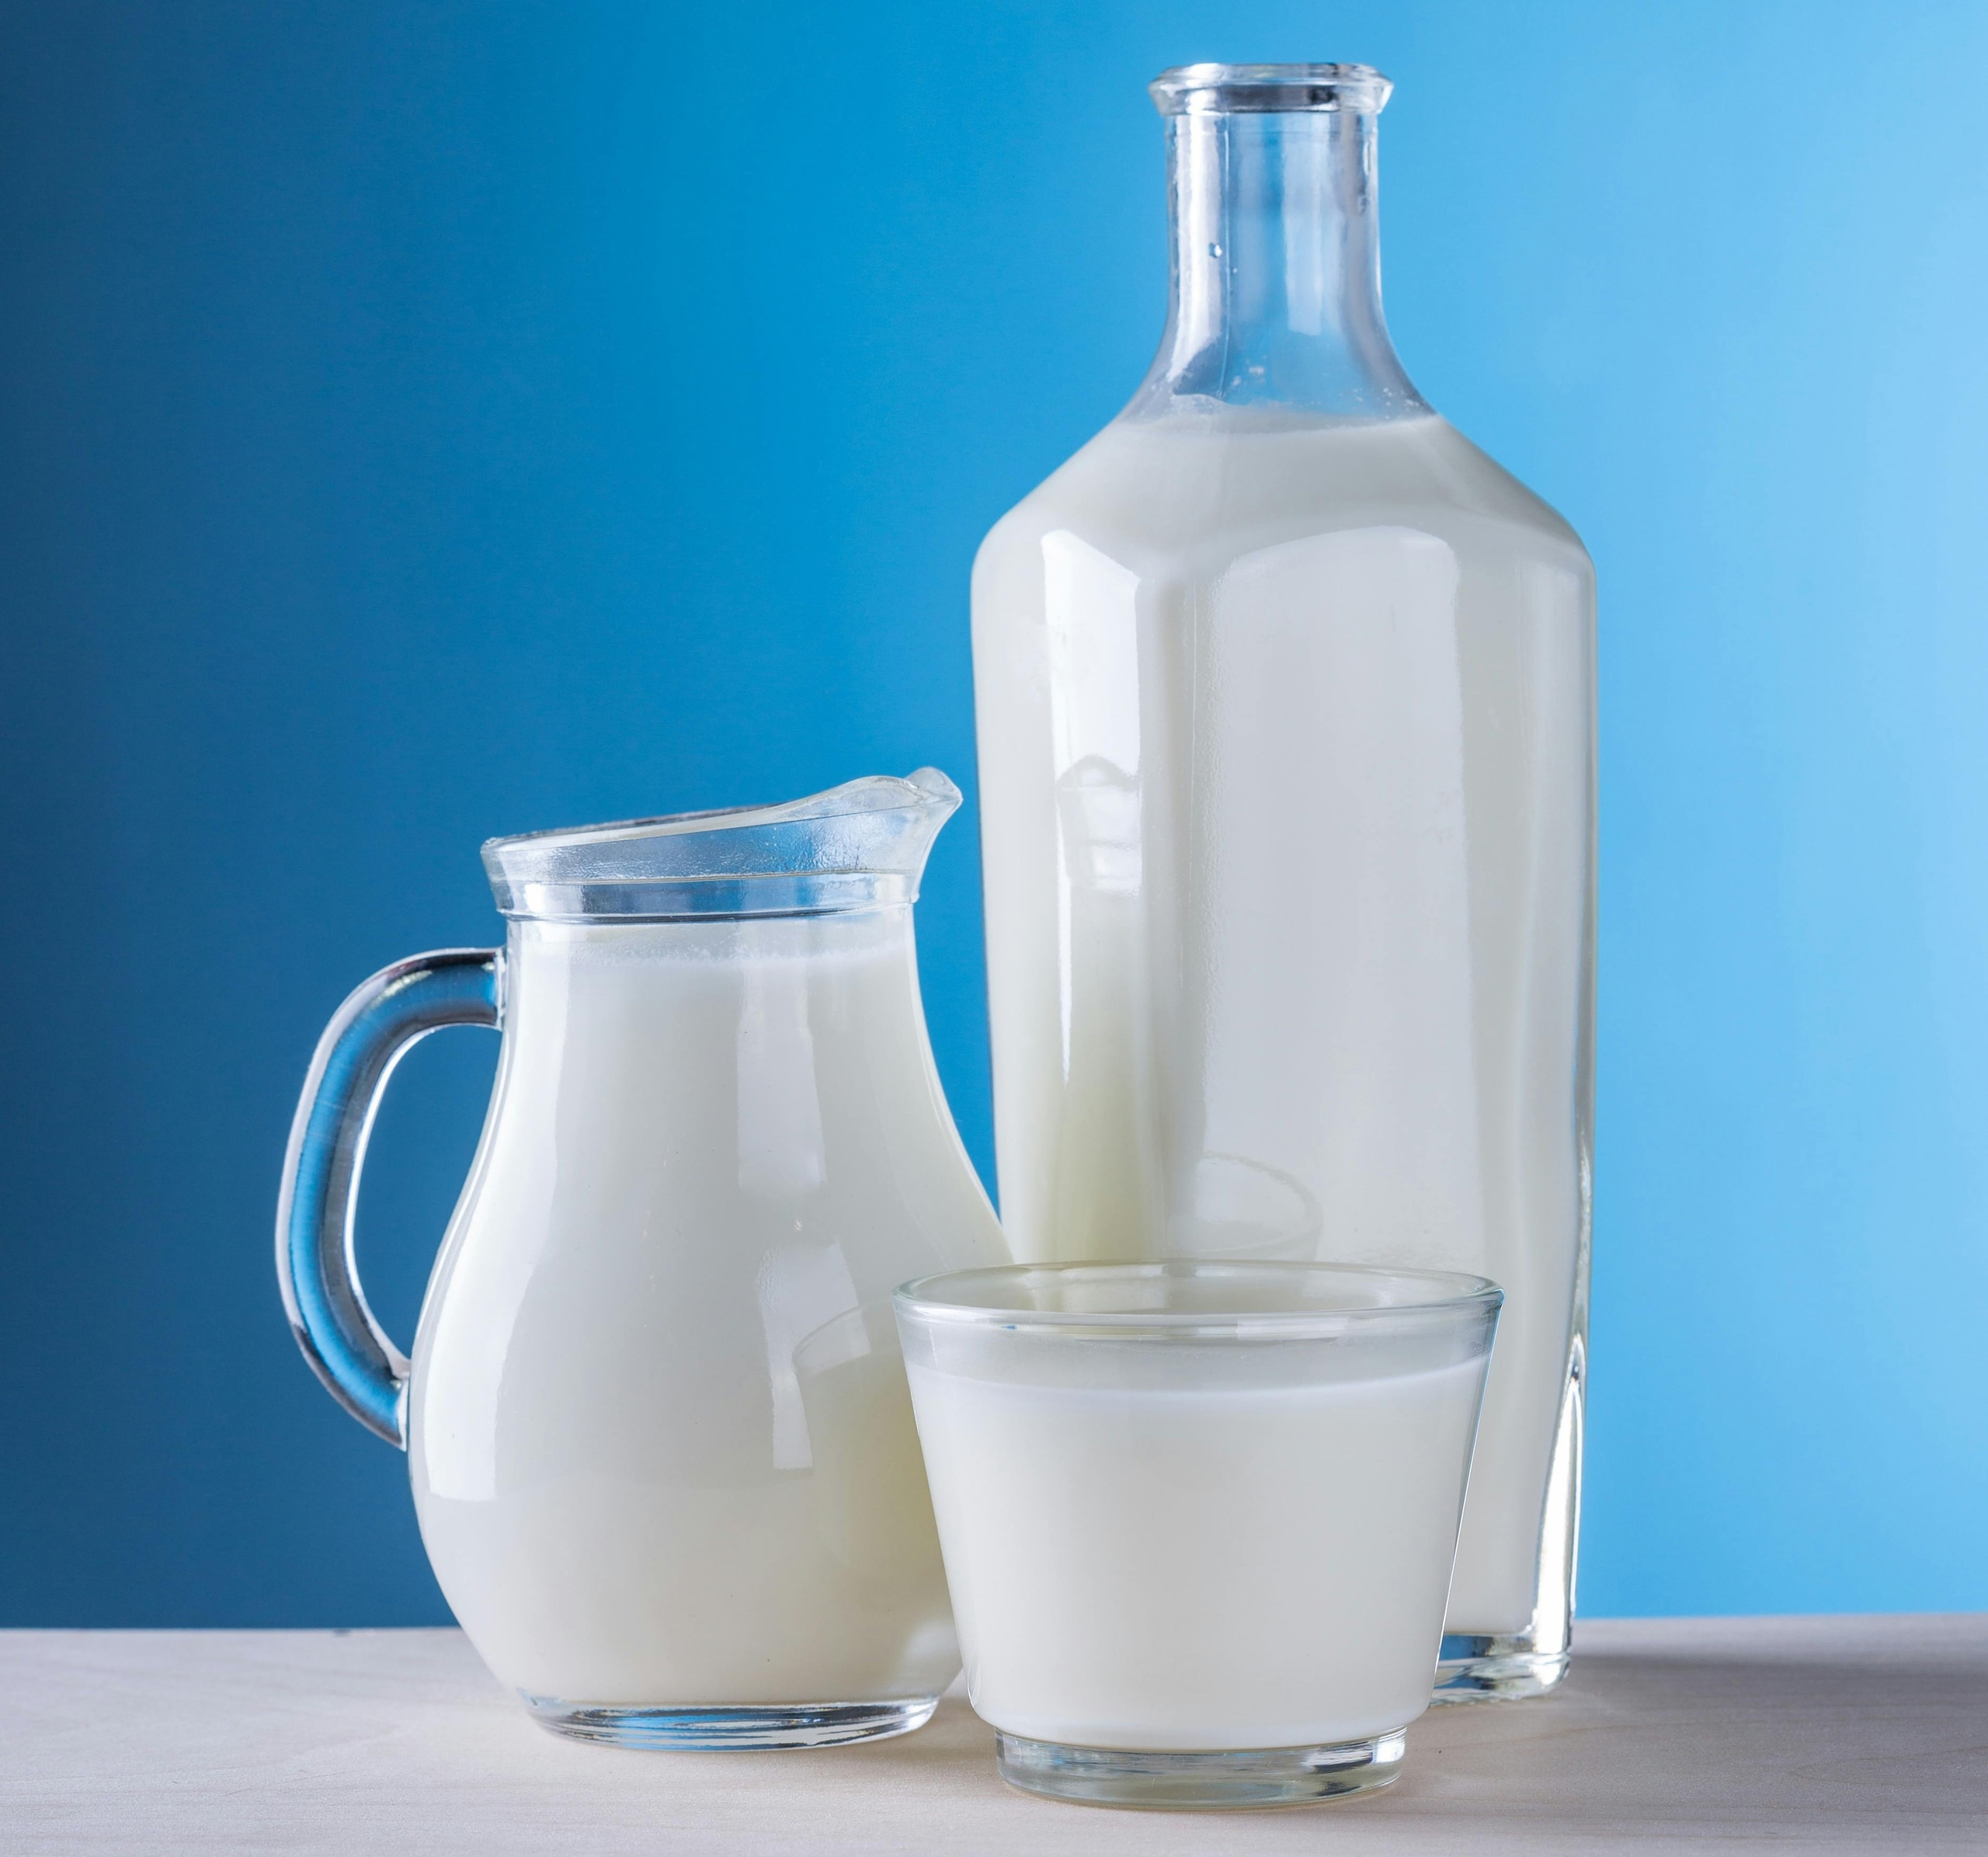 Khi bị khó tiêu, mọi người nên tránh dùng sữa và các sản phẩm từ sữa